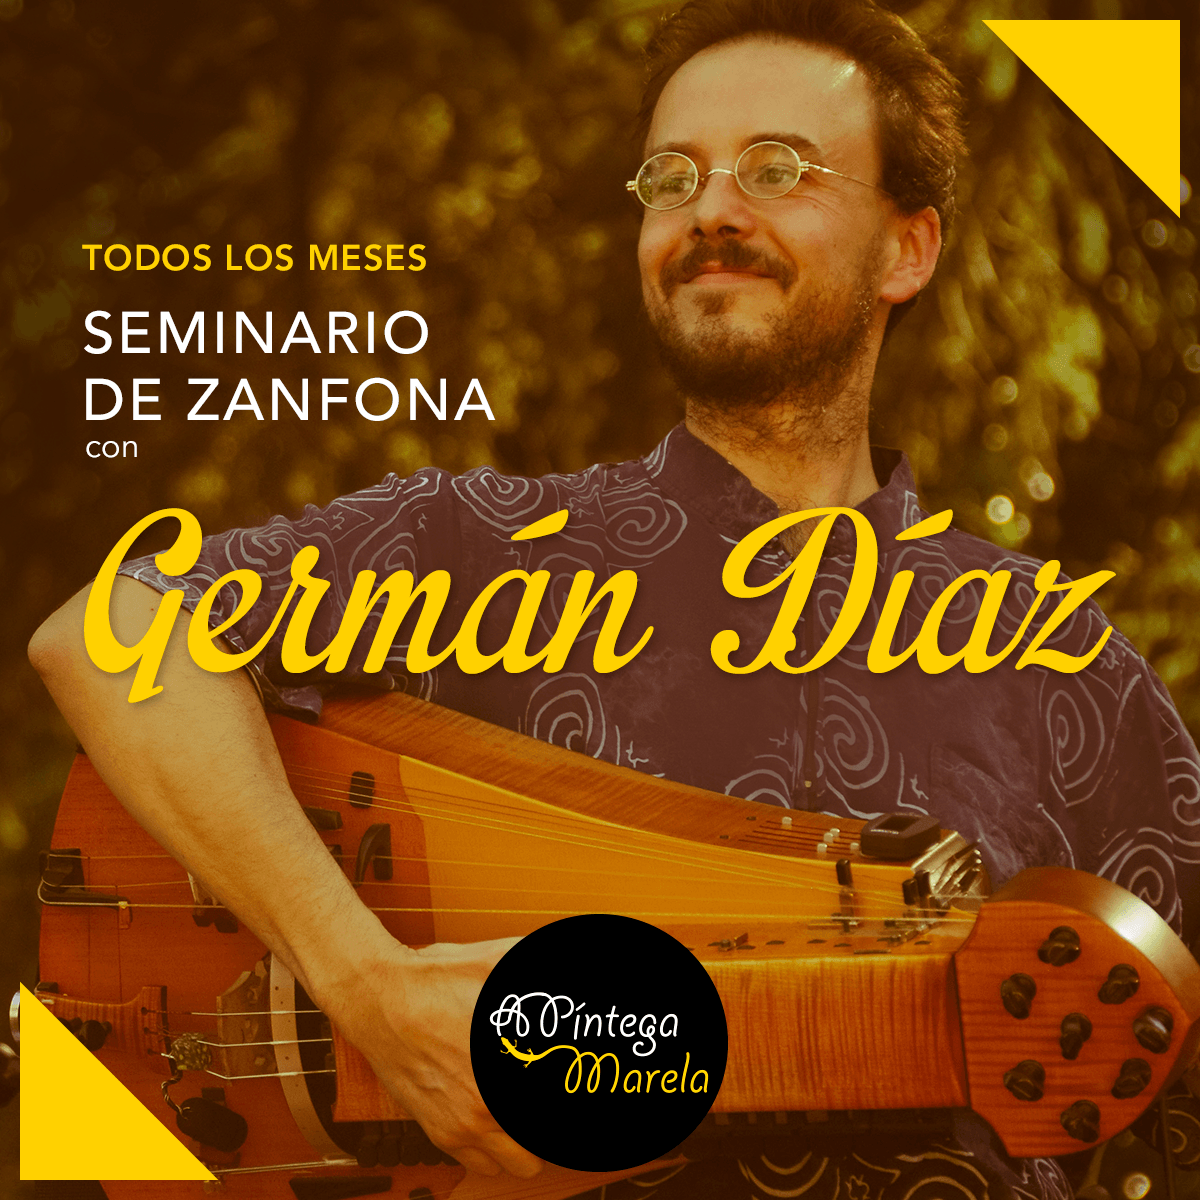 Seminario de zanfona en Madrid con German Diaz - clases de zanfona en A Píntega Marela